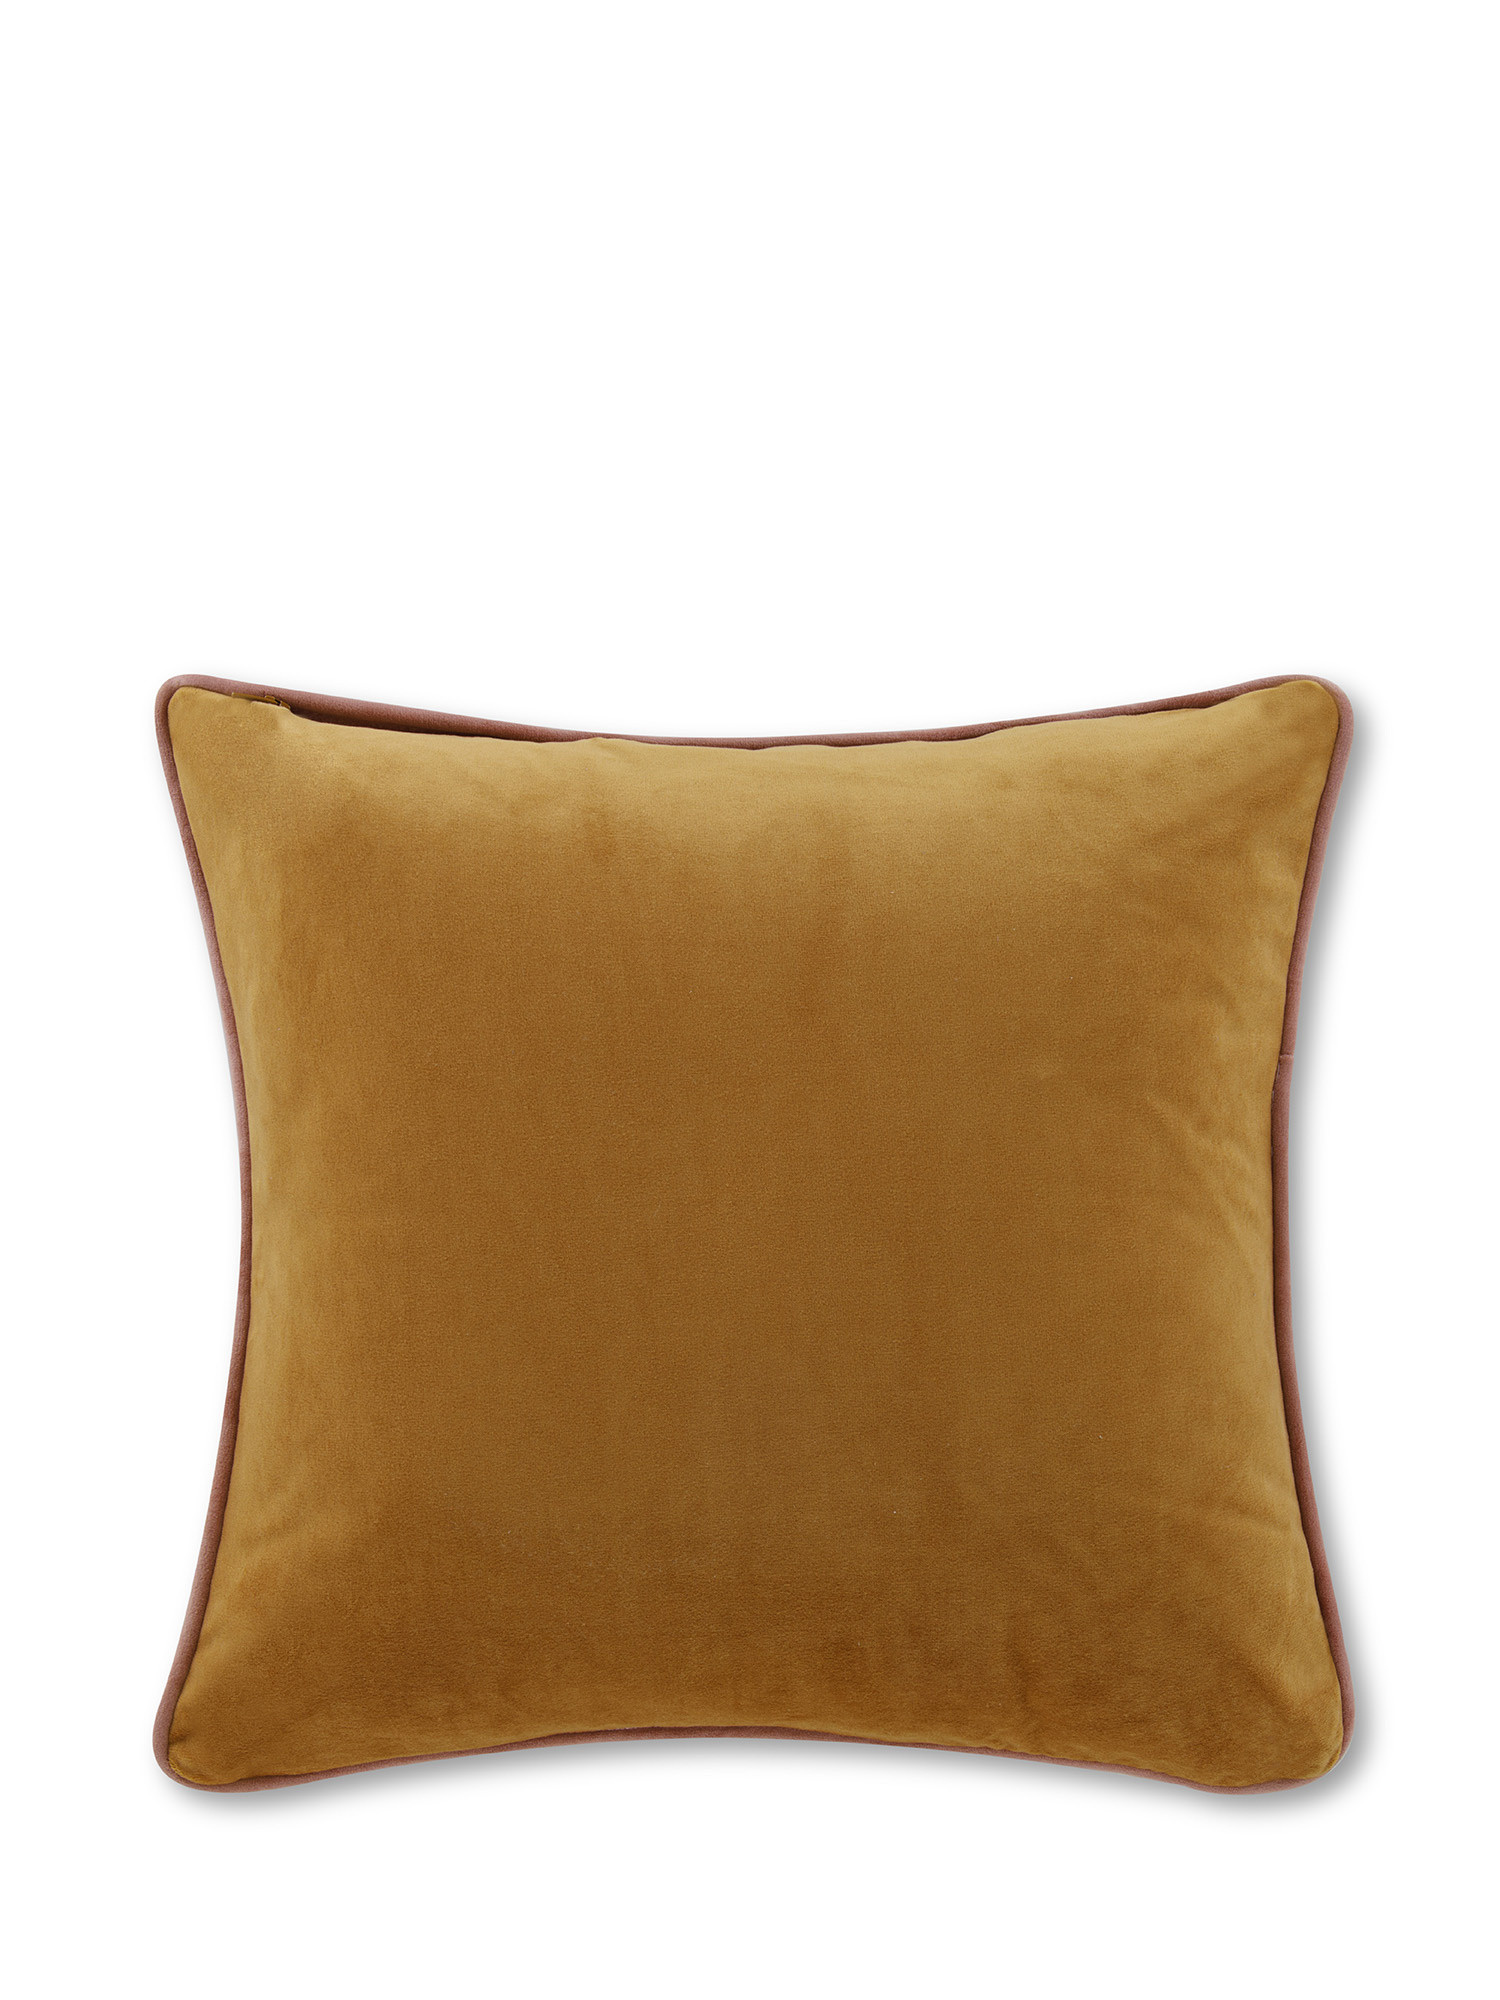 Cuscino in velluto con piping applicato sul bordo 45x45 cm, Giallo senape, large